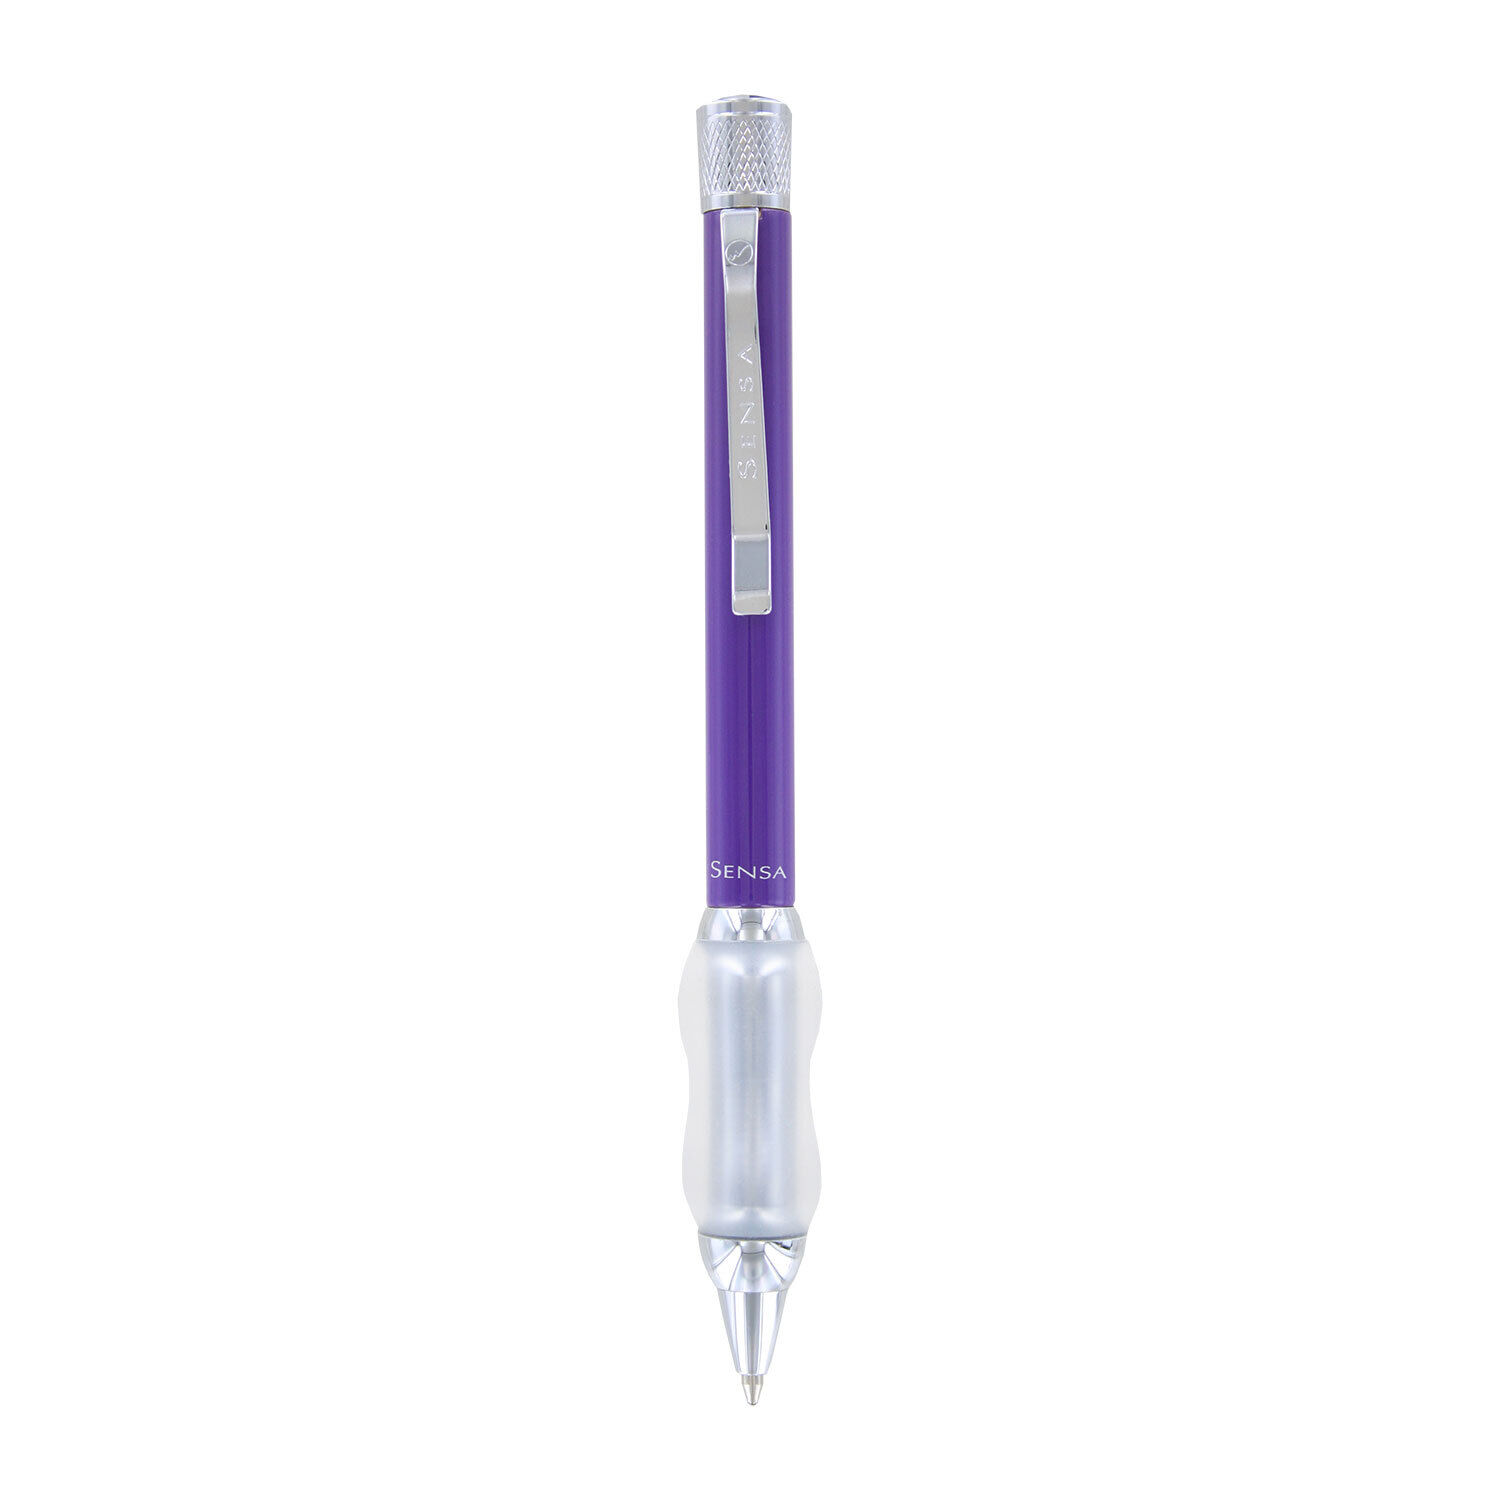 Sensa Classic Retractable Ballpoint Pen - Classic Amethyst